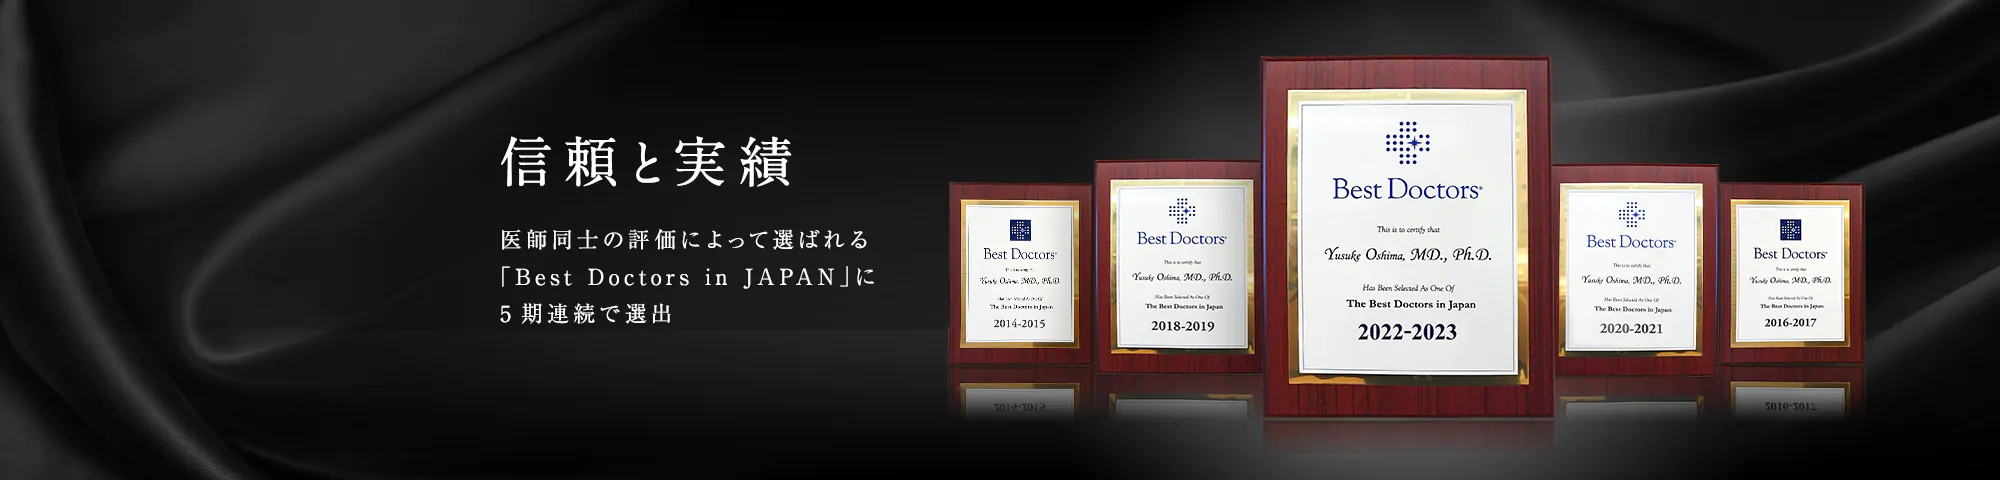 信頼と実績　医師同士の評価によって選ばれる 「Best Doctors in JAPAN」に 4期連続で選出